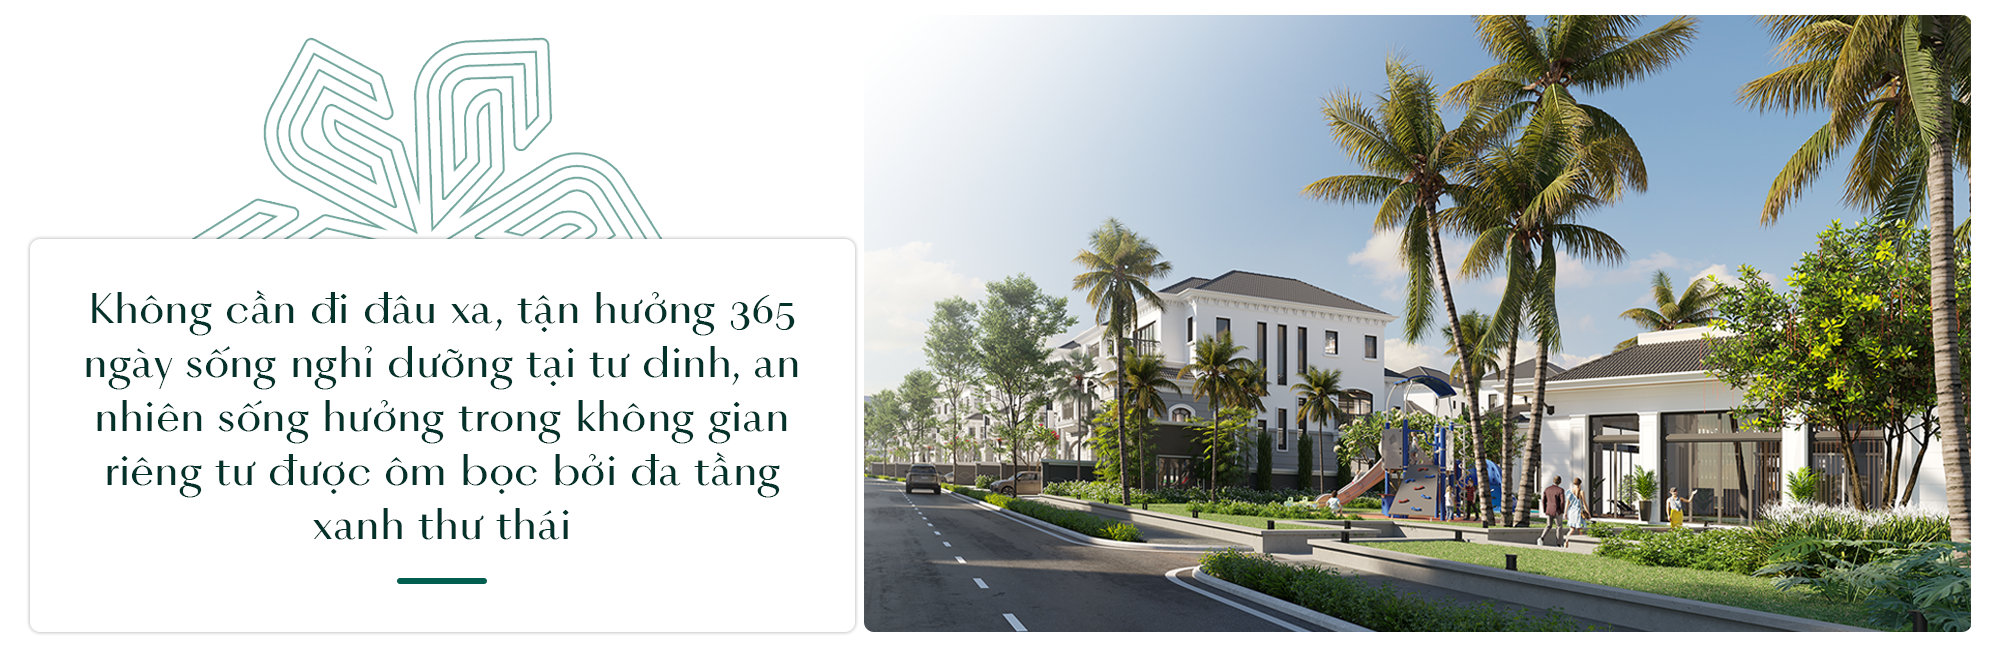 Grand Bay Halong Villas: Bến đỗ của phong cách sống Resort living sang trọng bên vịnh biển - Ảnh 3.